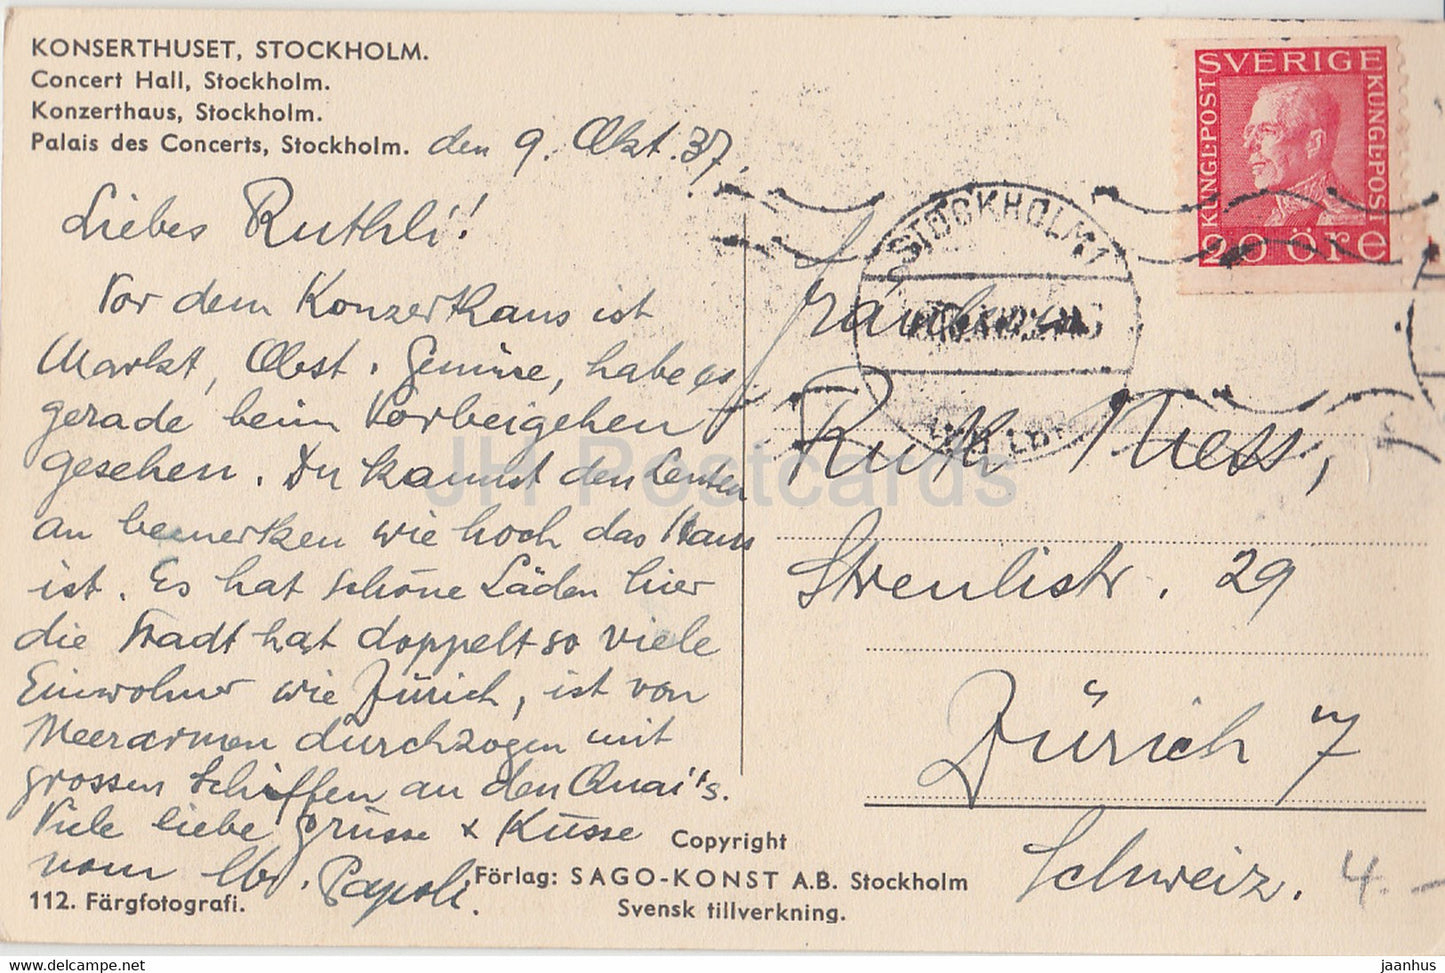 Stockholm - Konserthuset - Concert Hall - old postcard - 1937 - Sweden - used